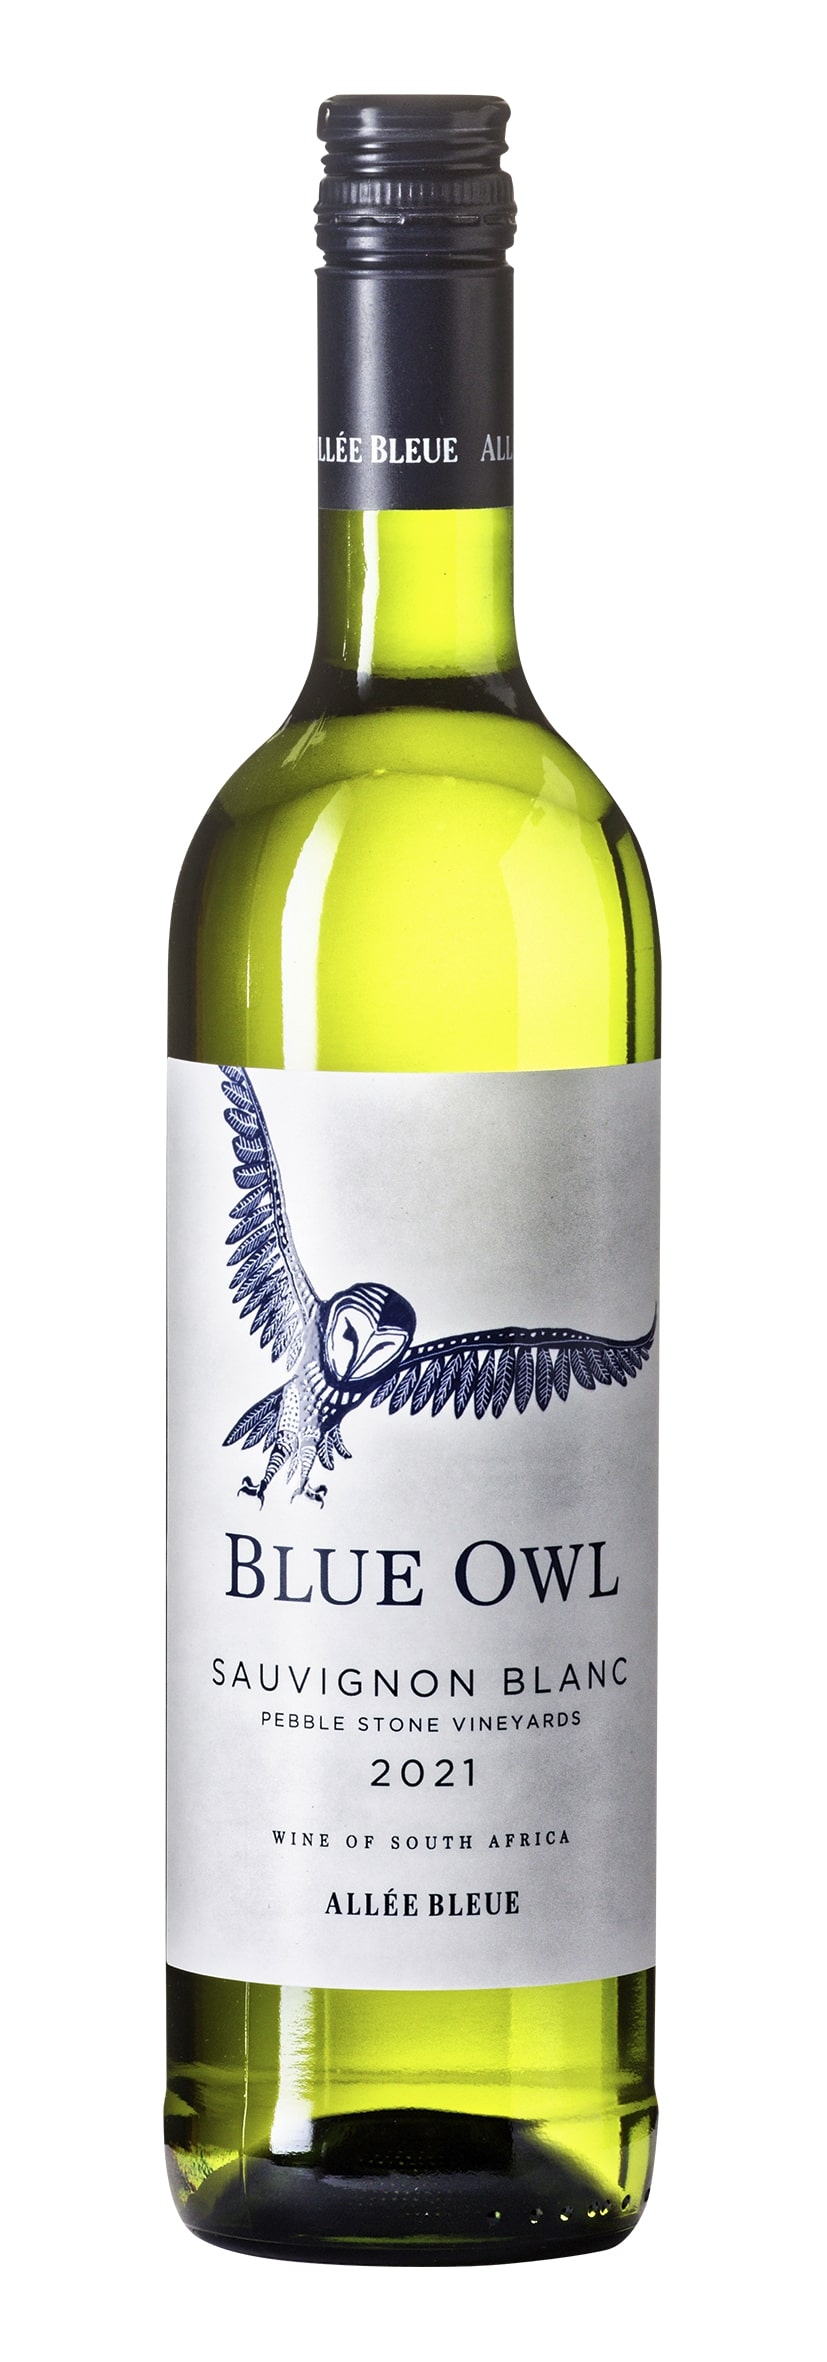 W.O. Paarl Sauvignon Blanc Blue Owl 2021